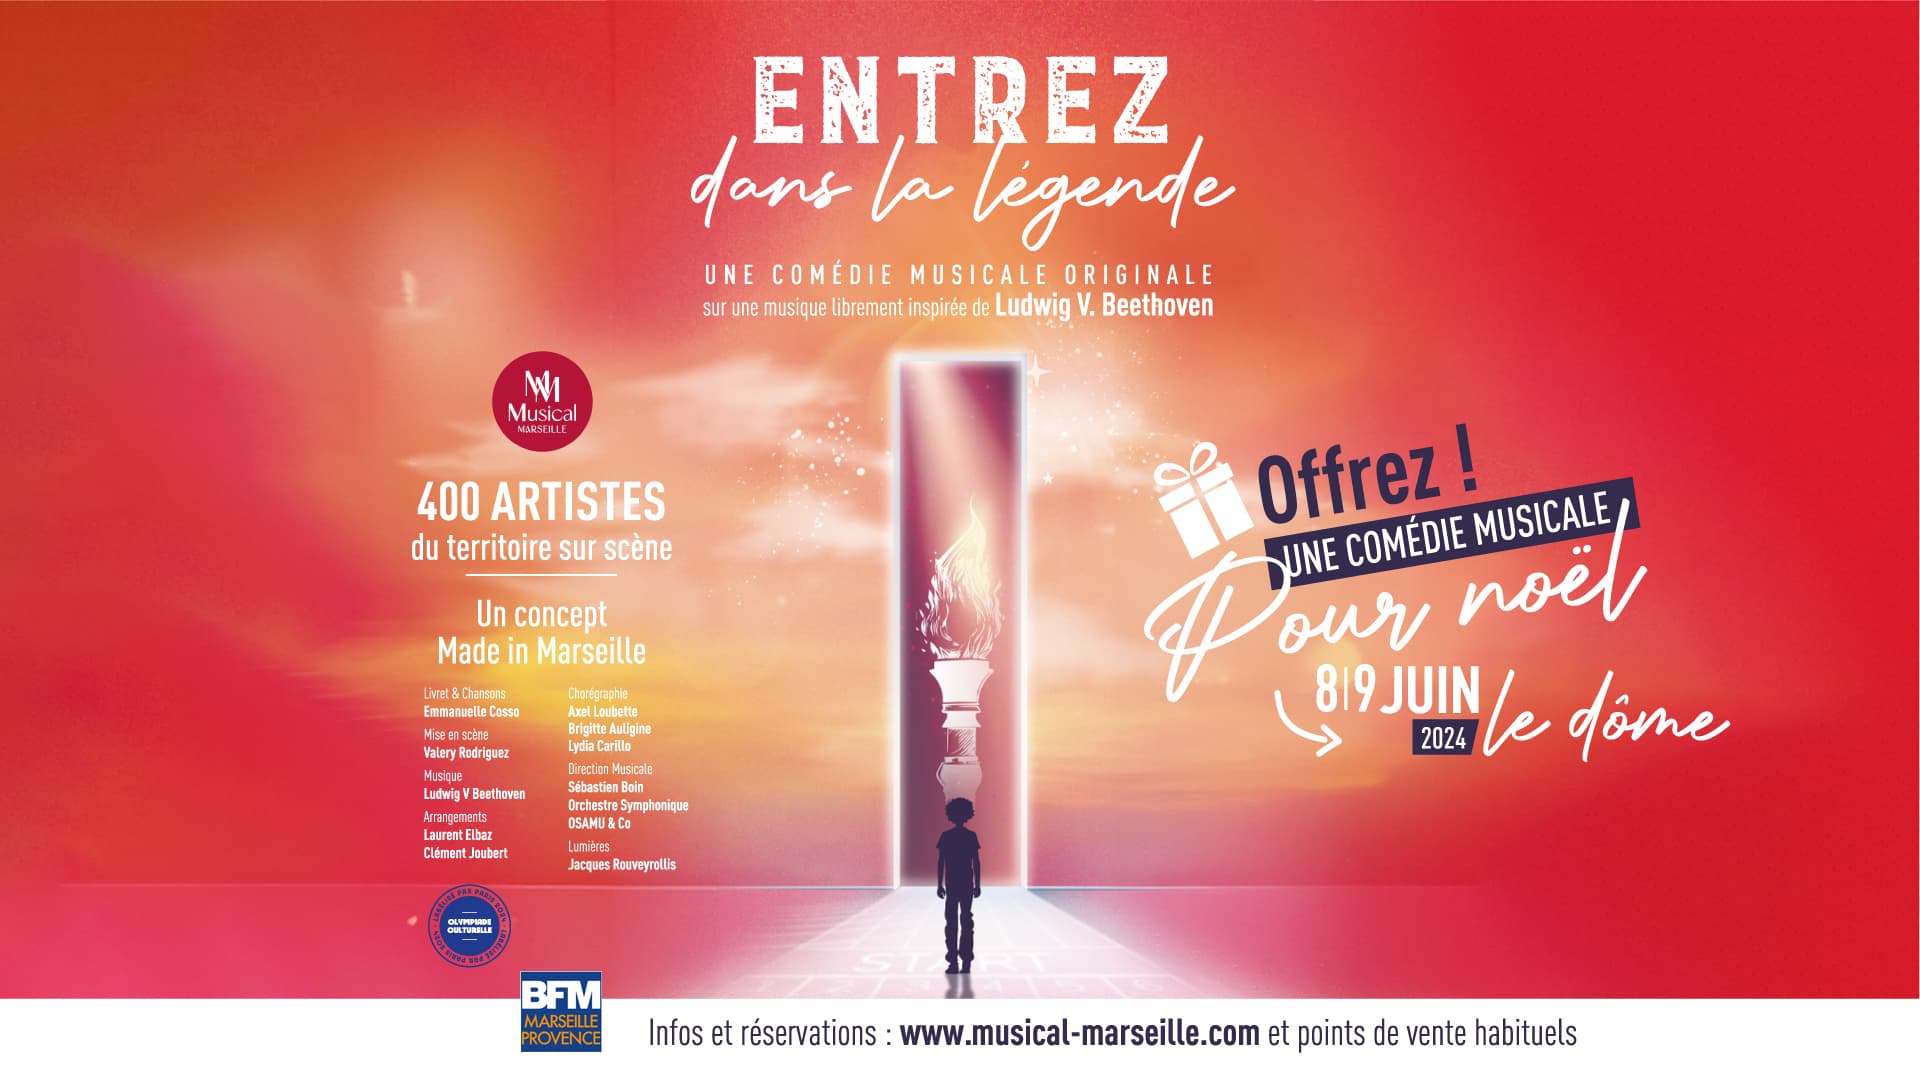 Entrez Dans La Légende - Une Comédie Musicale Originale en Le Dome Tickets